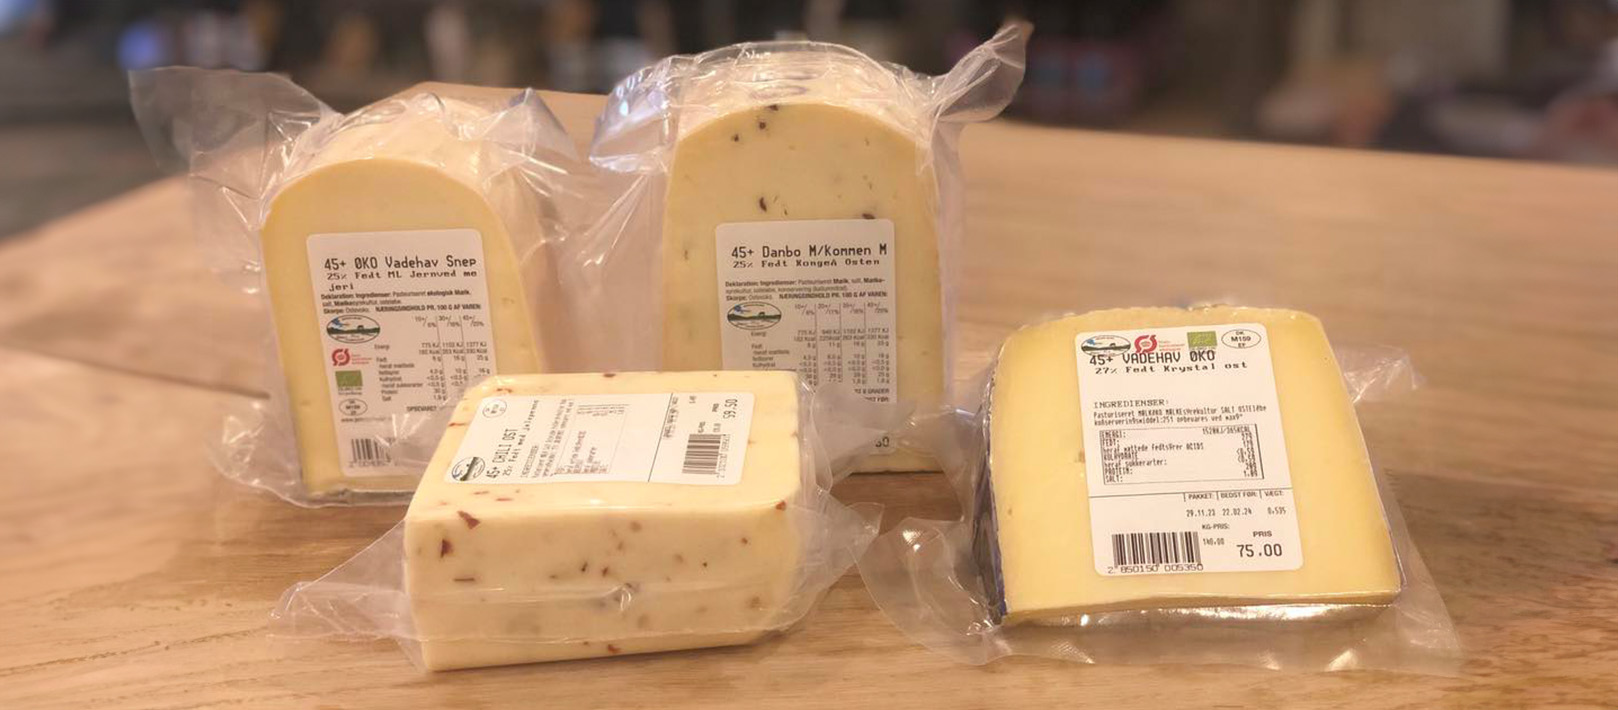 Fire forskellige oste fra Jernved Mejeri